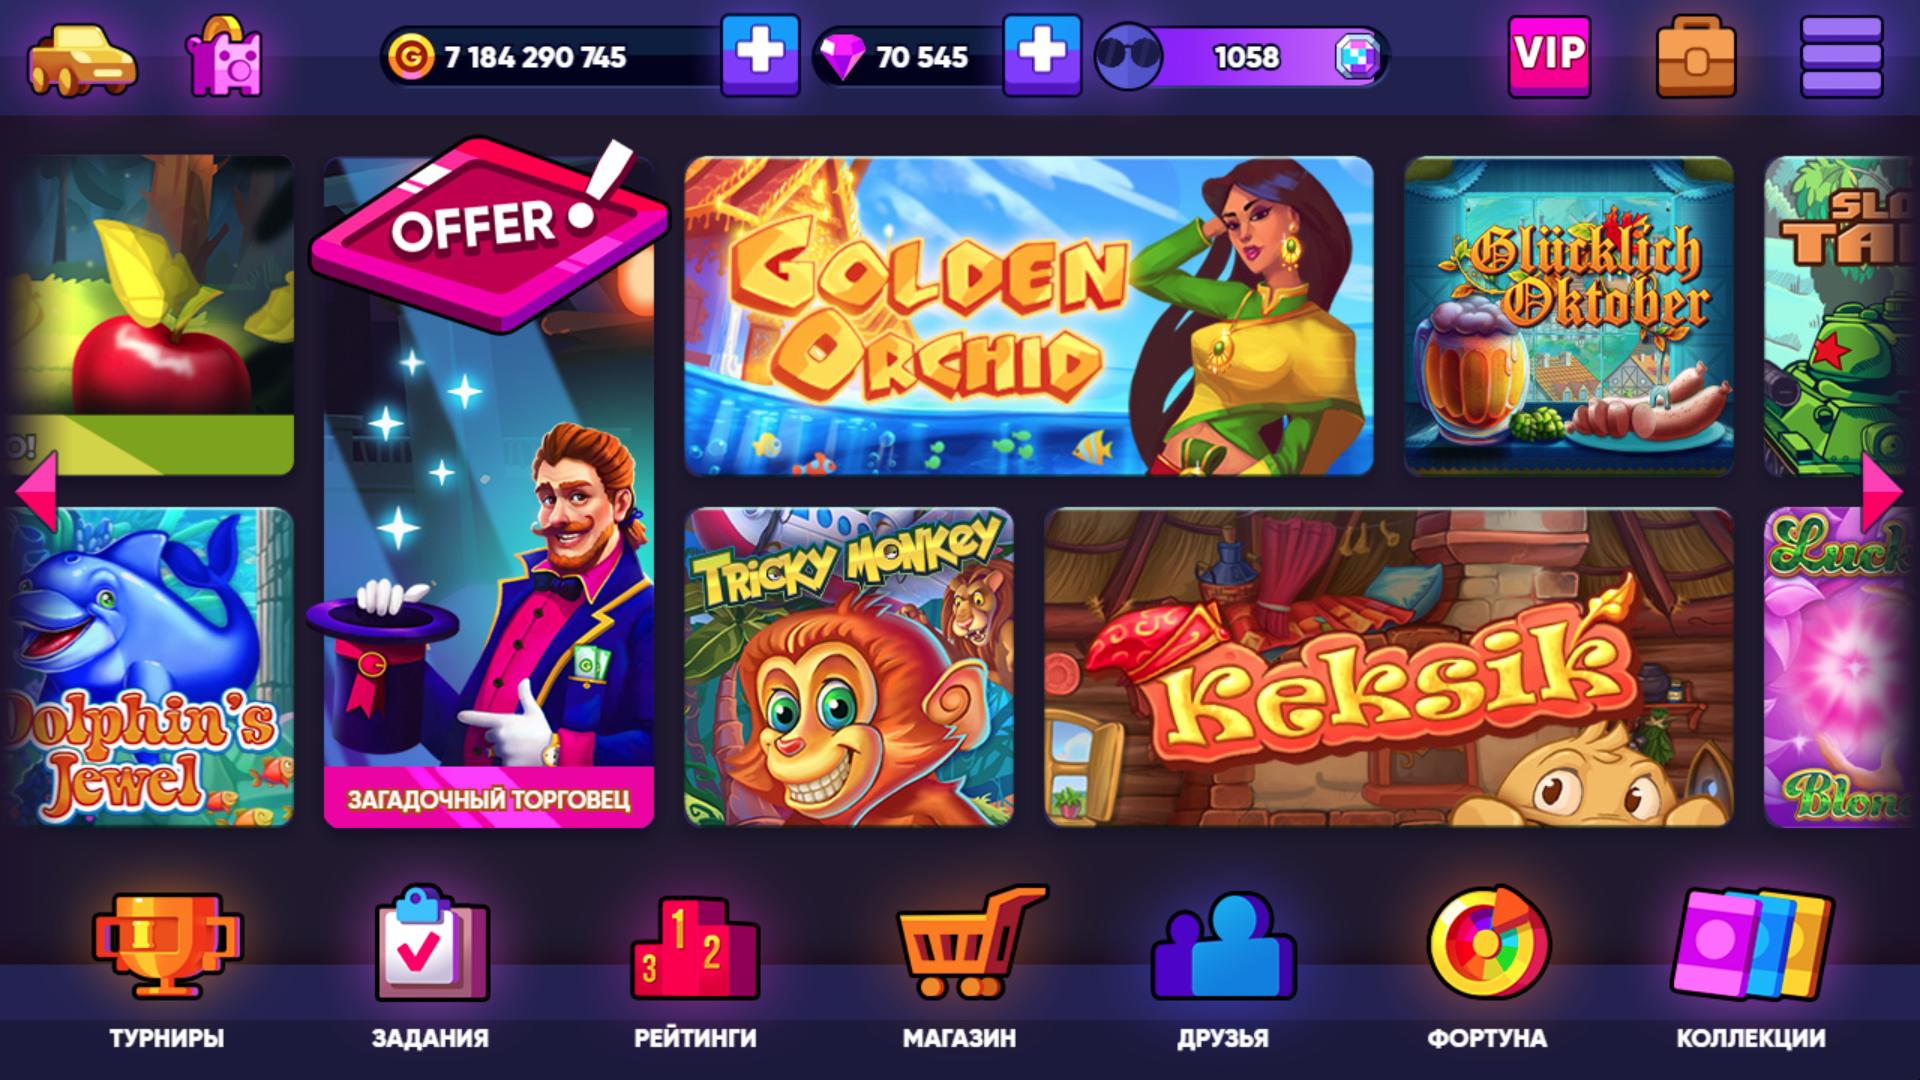 Казино скачать бесплатно игровые автоматы играть казино онлайн беларусь на деньги с бонусами